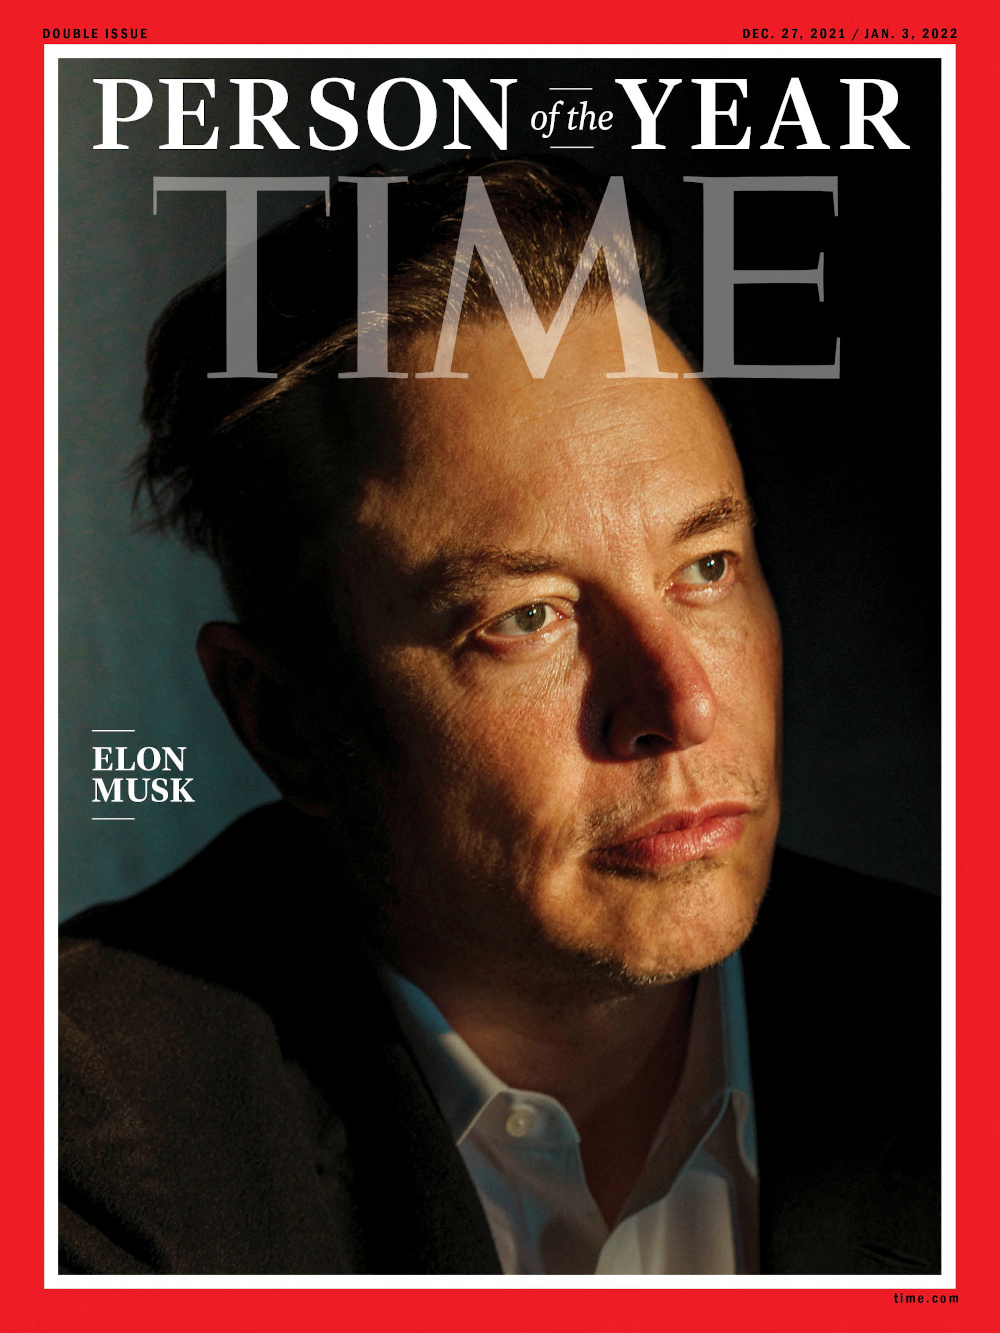 Le milliardaire Elon Musk désigné personnalité de l'année par Time Magazine